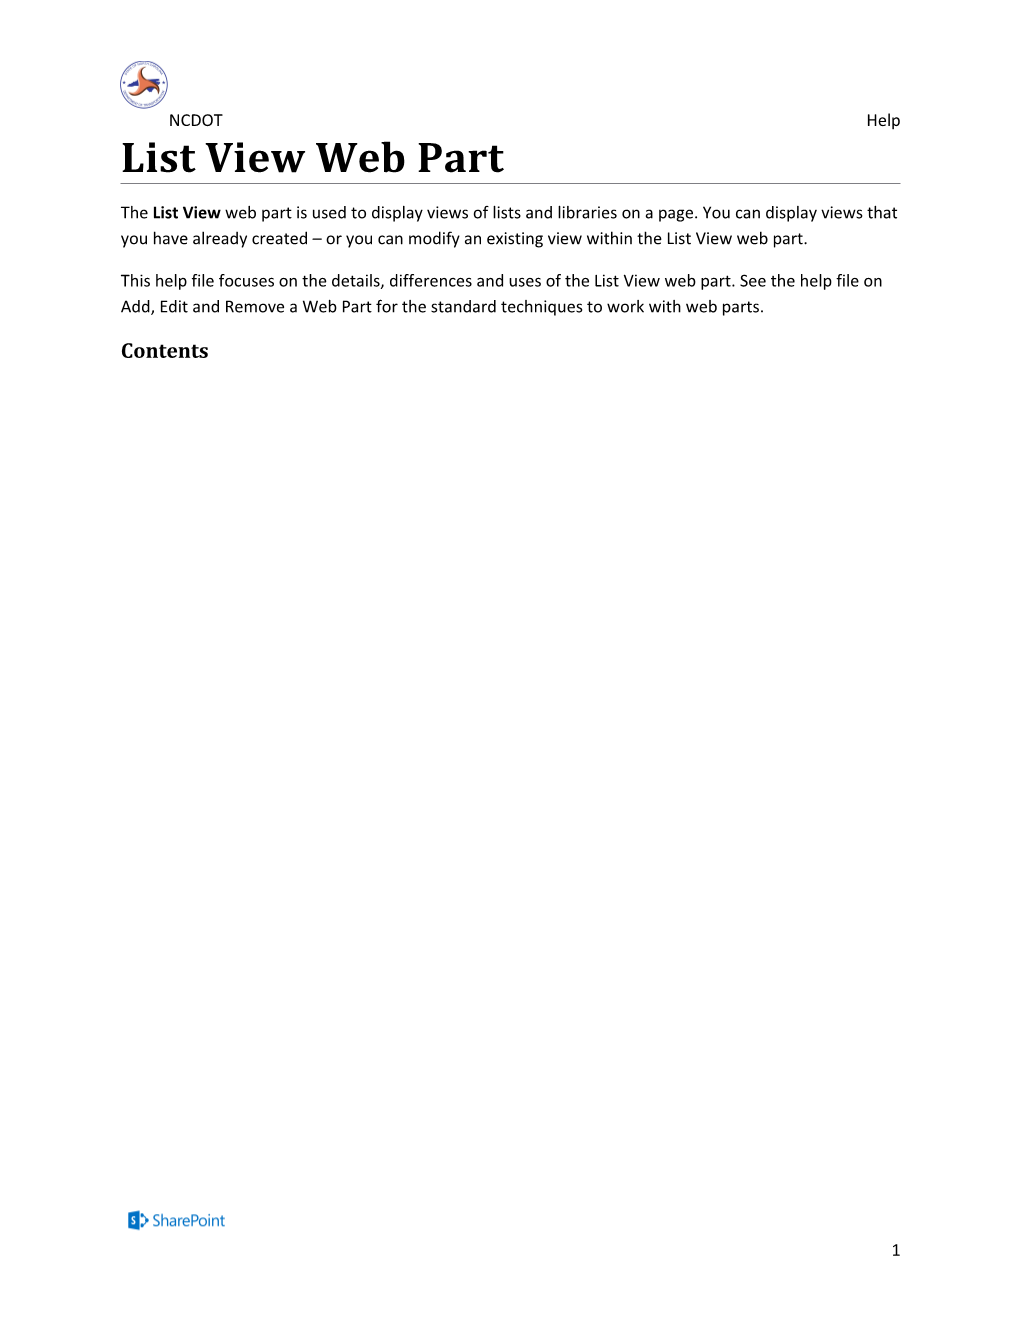 List View Web Part (D)